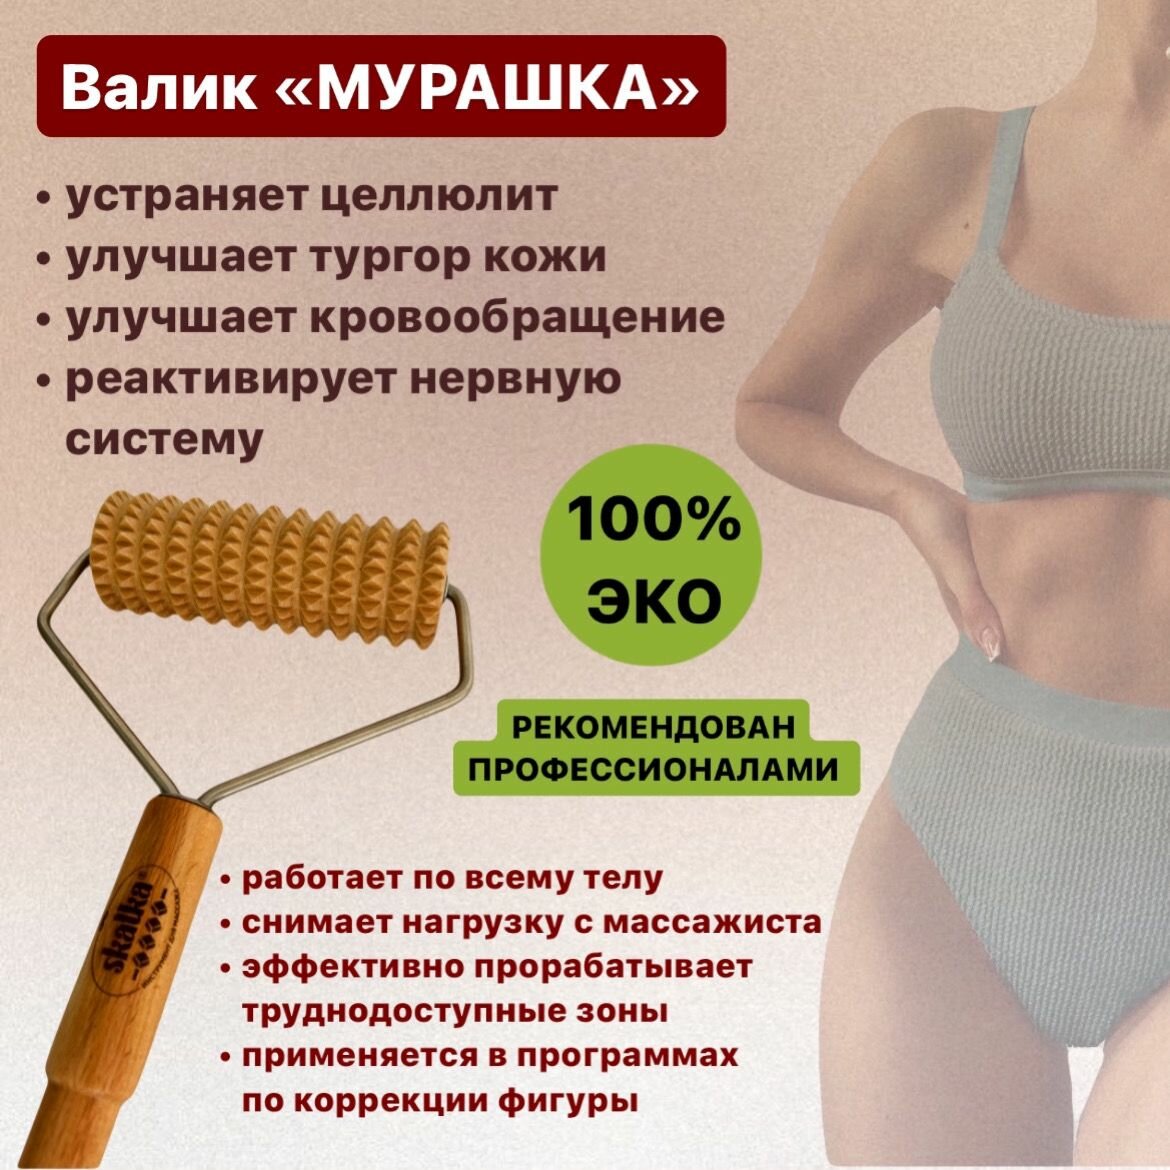 Skalka Деревянный массажер инструмент для массажа №23 Валик "Мурашка"